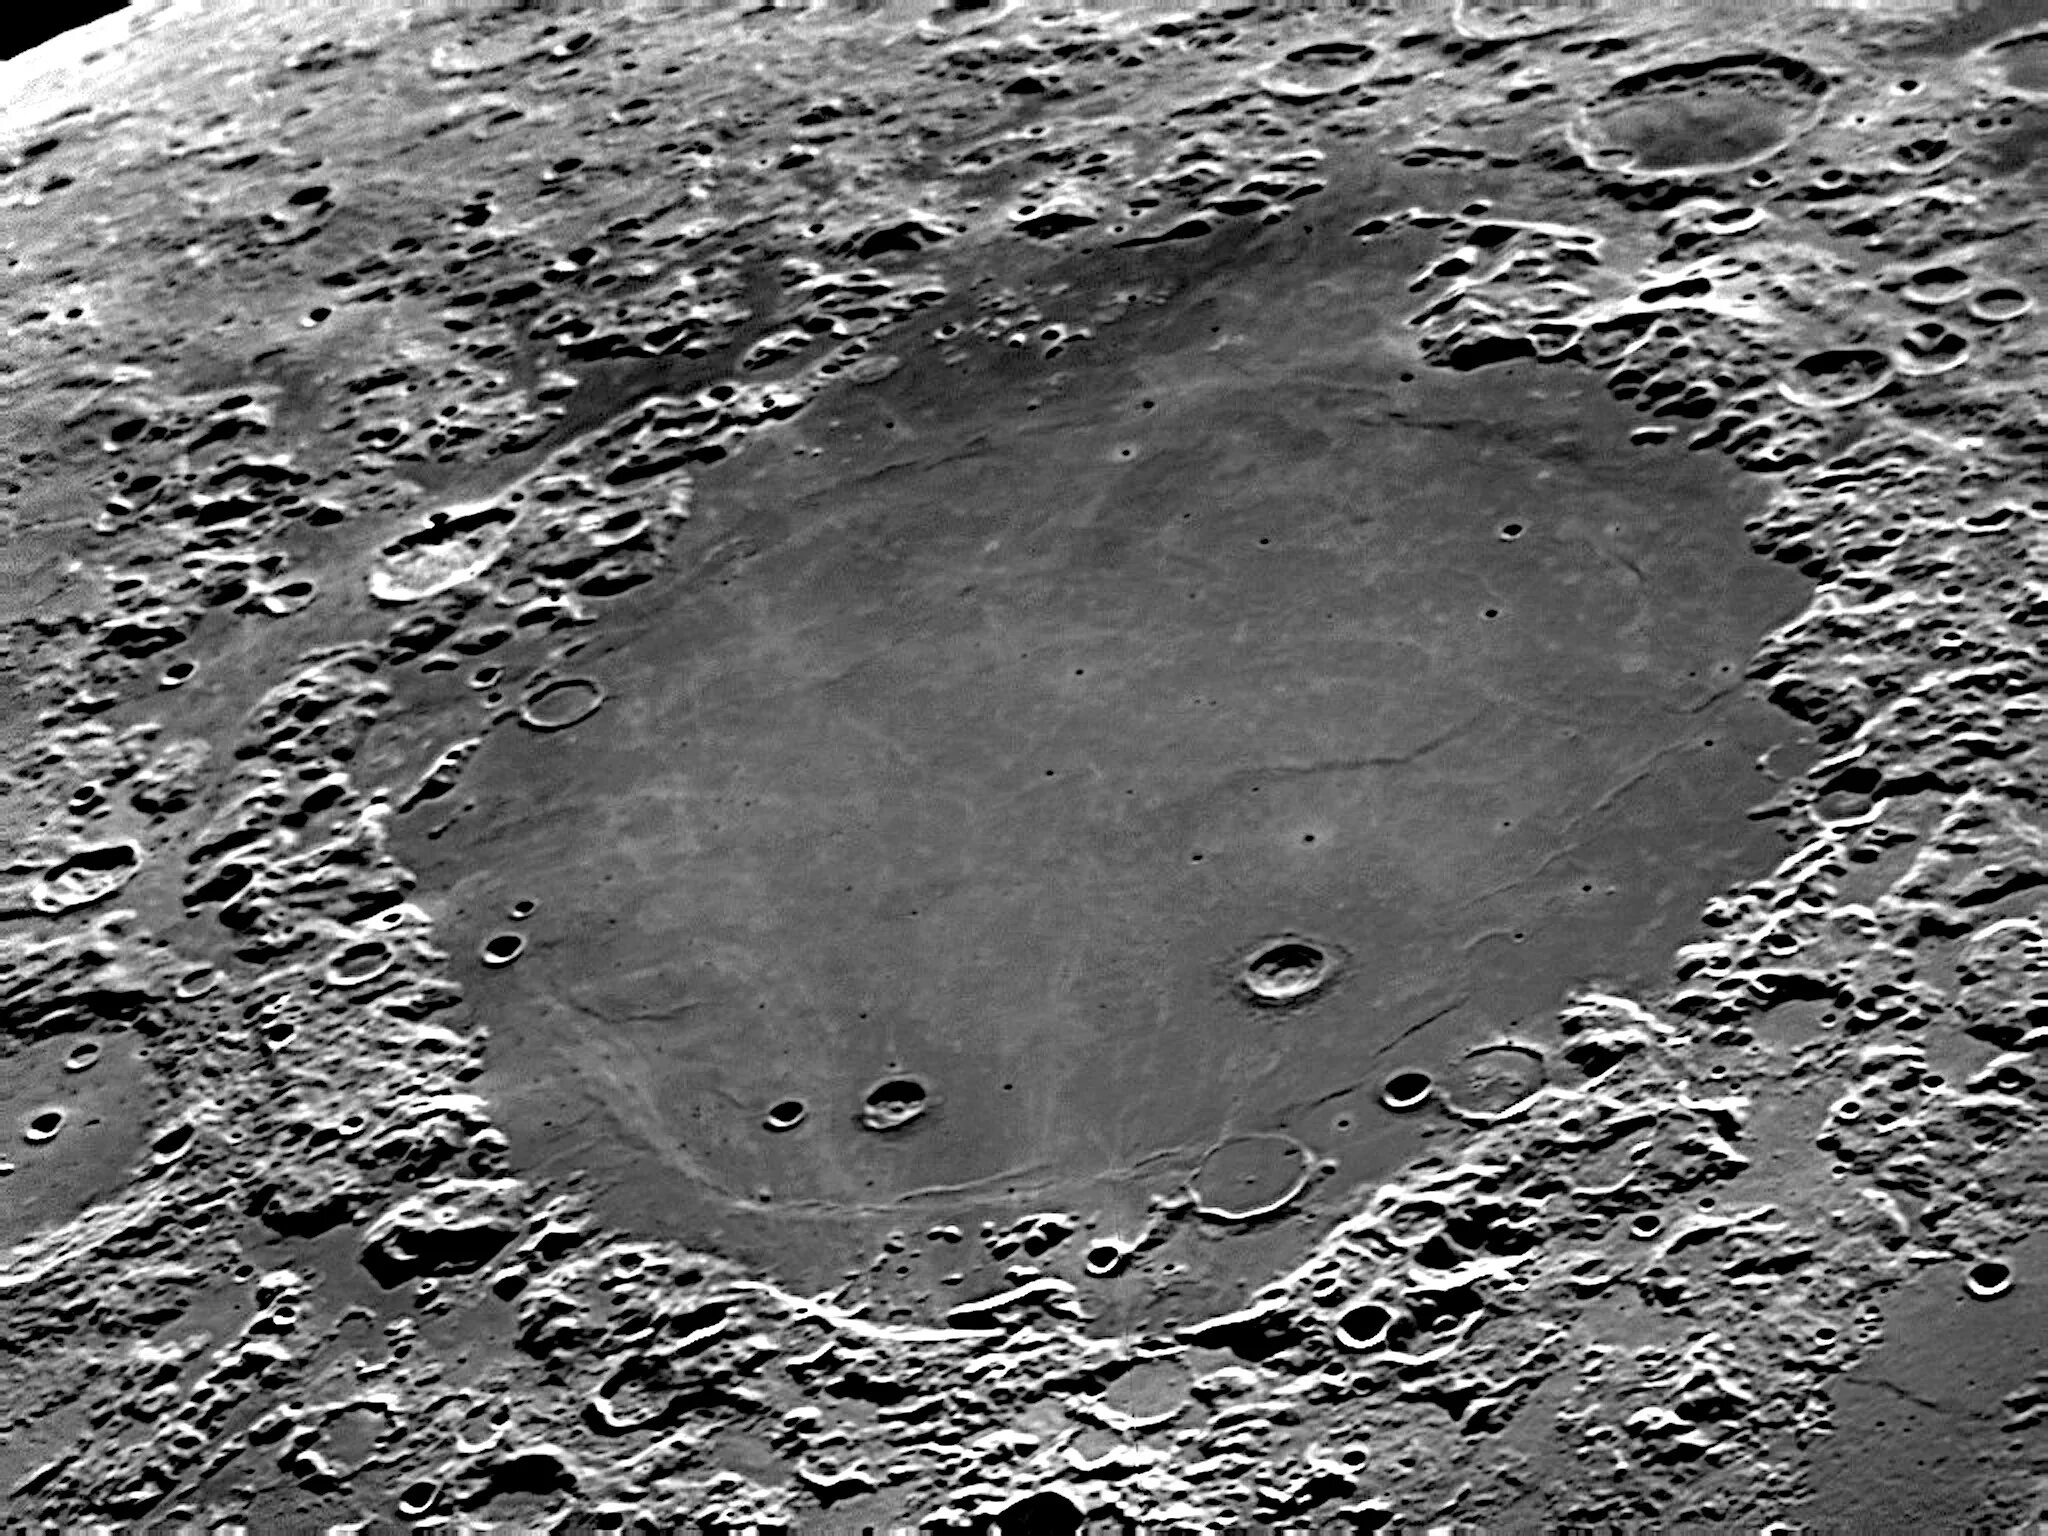 Кратер Луны море кризисов. Кратер Коперник. Кратер Ван де Грааф на Луне. Кратер Архимед. Луна лунные моря